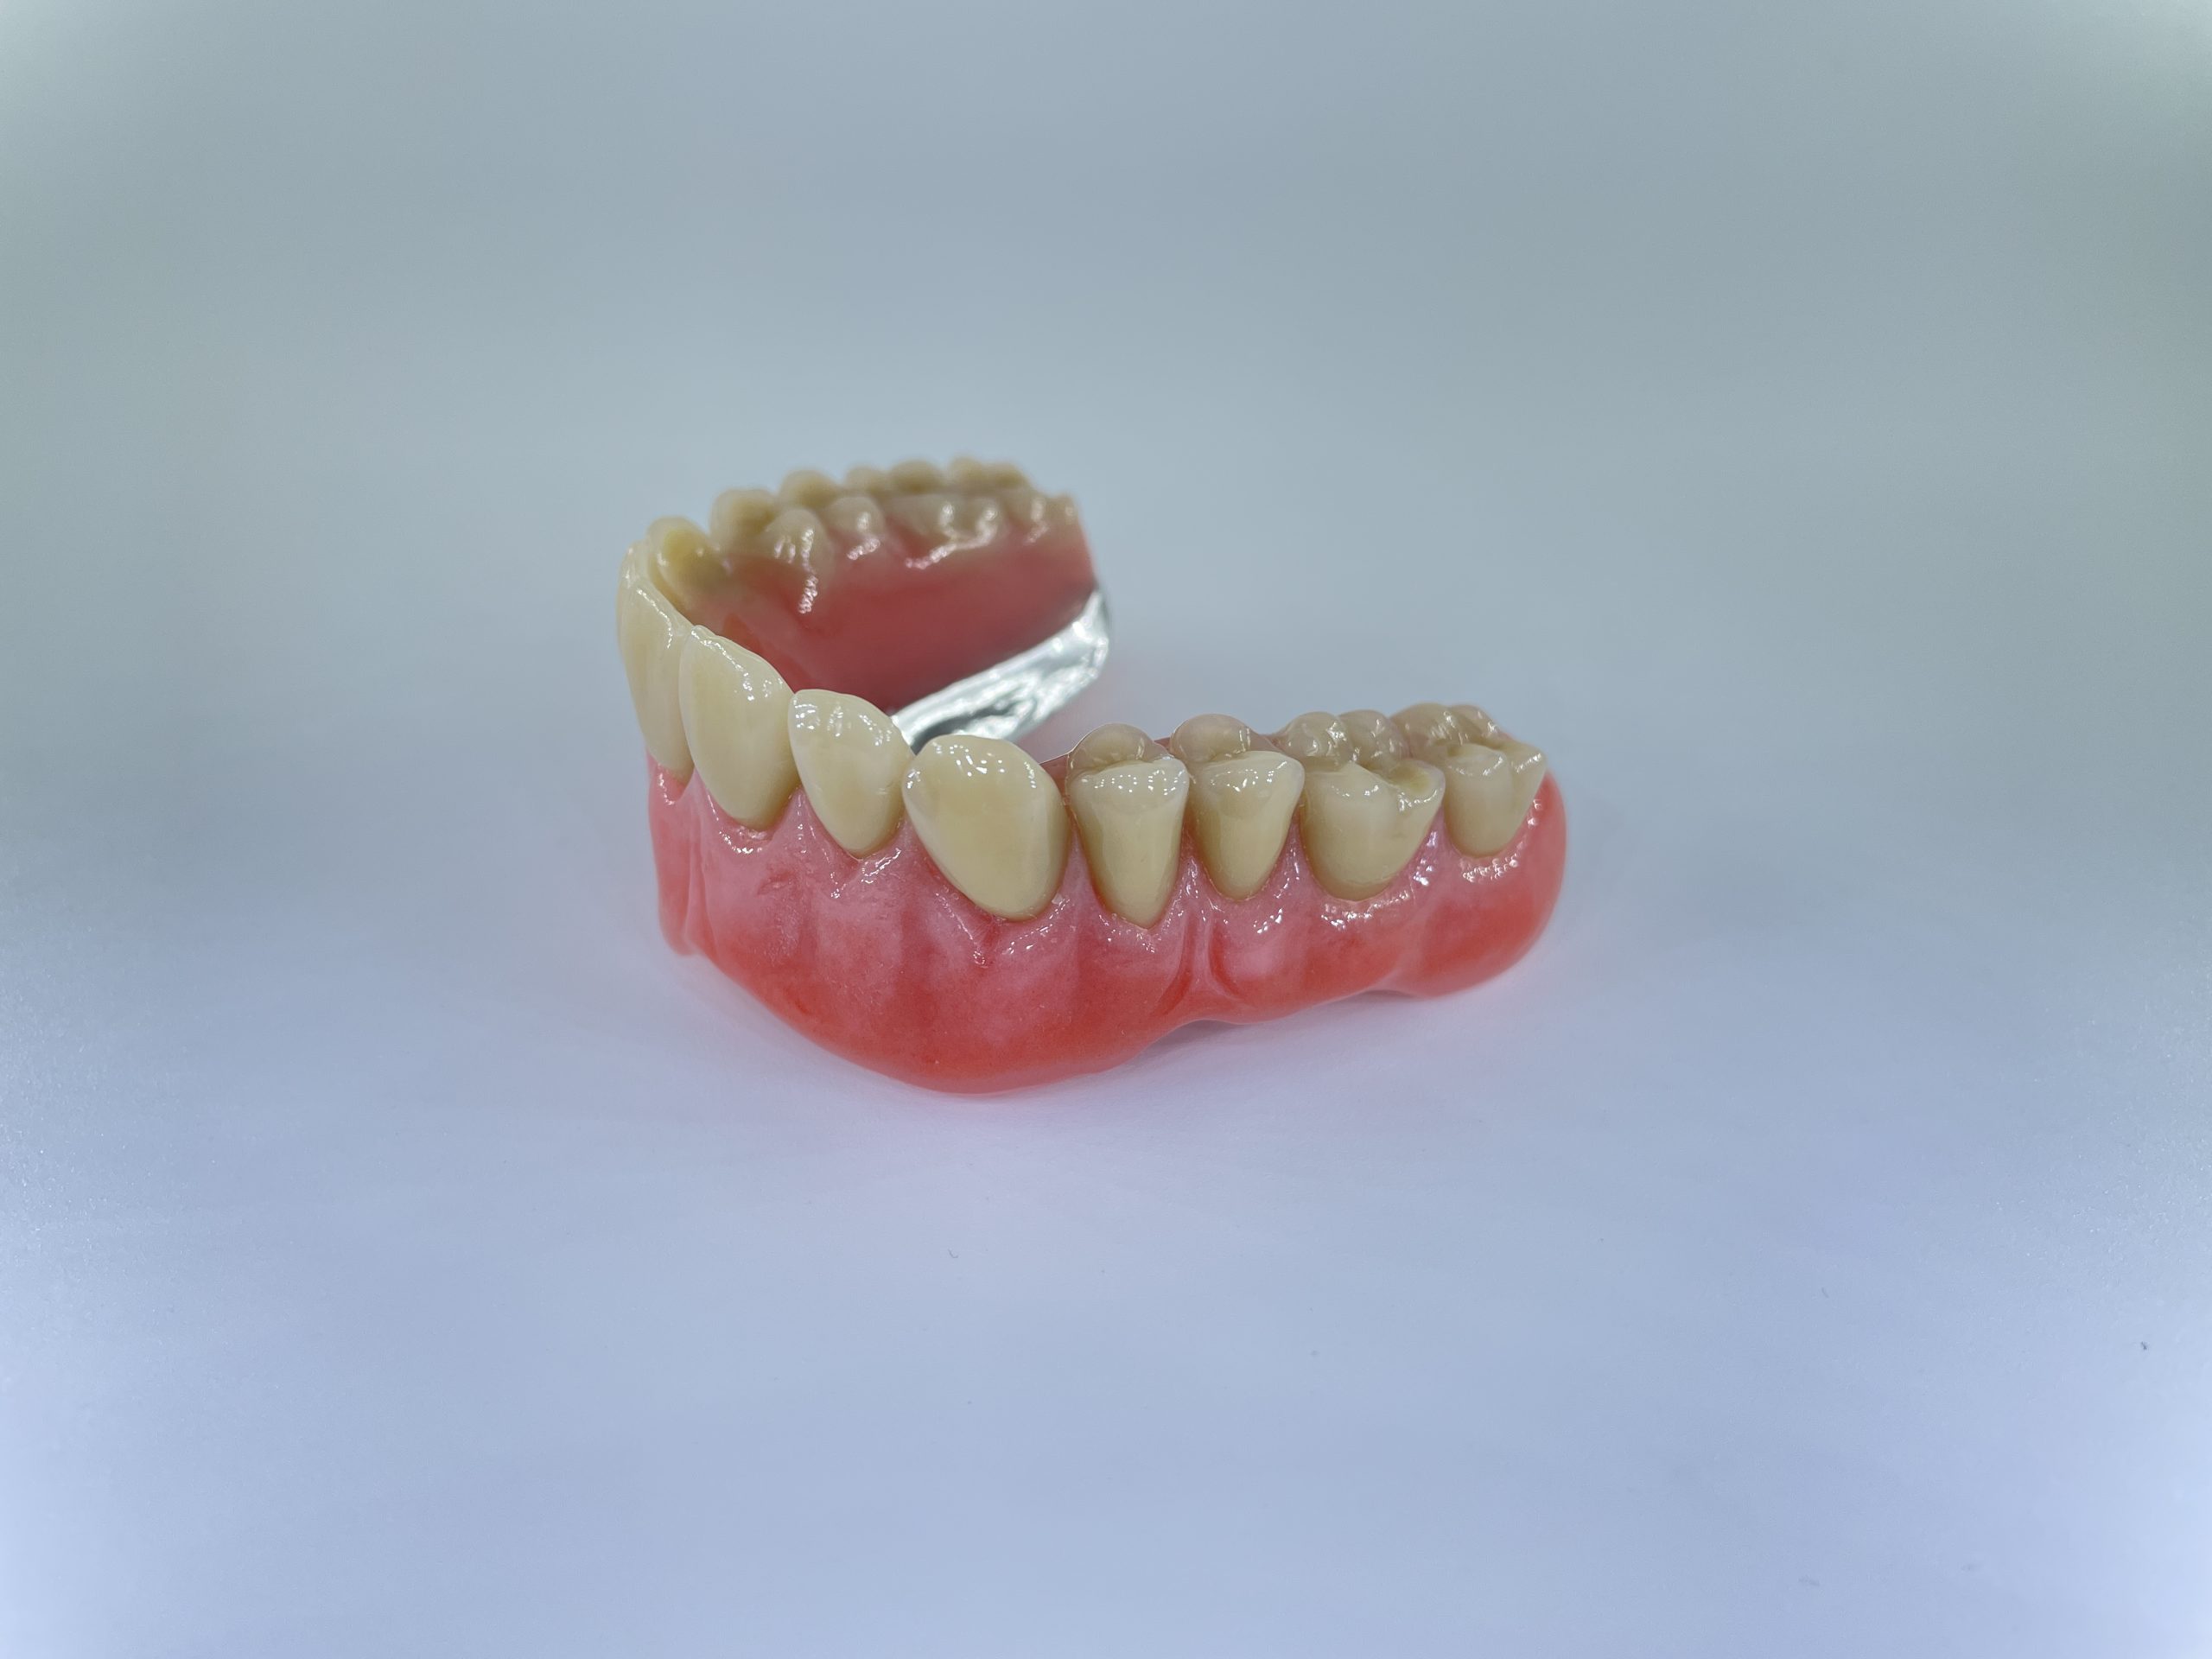 hybrid tandprotese til overmund omvendt højre Resultater af færdigeproduceret tandproteser